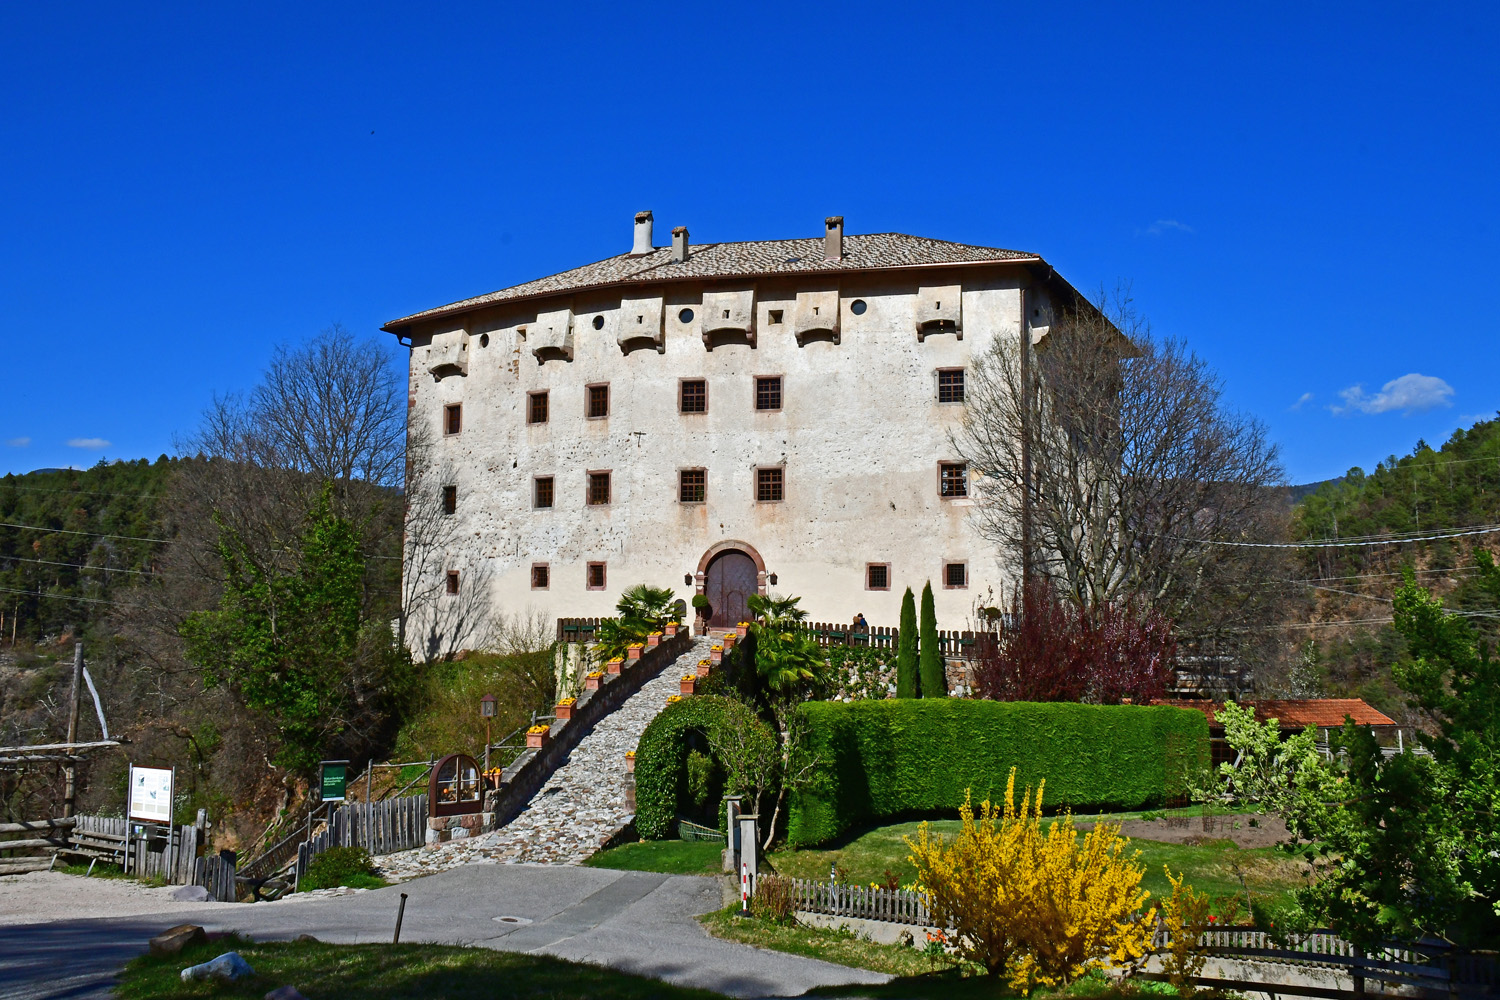 Prissian, Schloss Katzenzungen